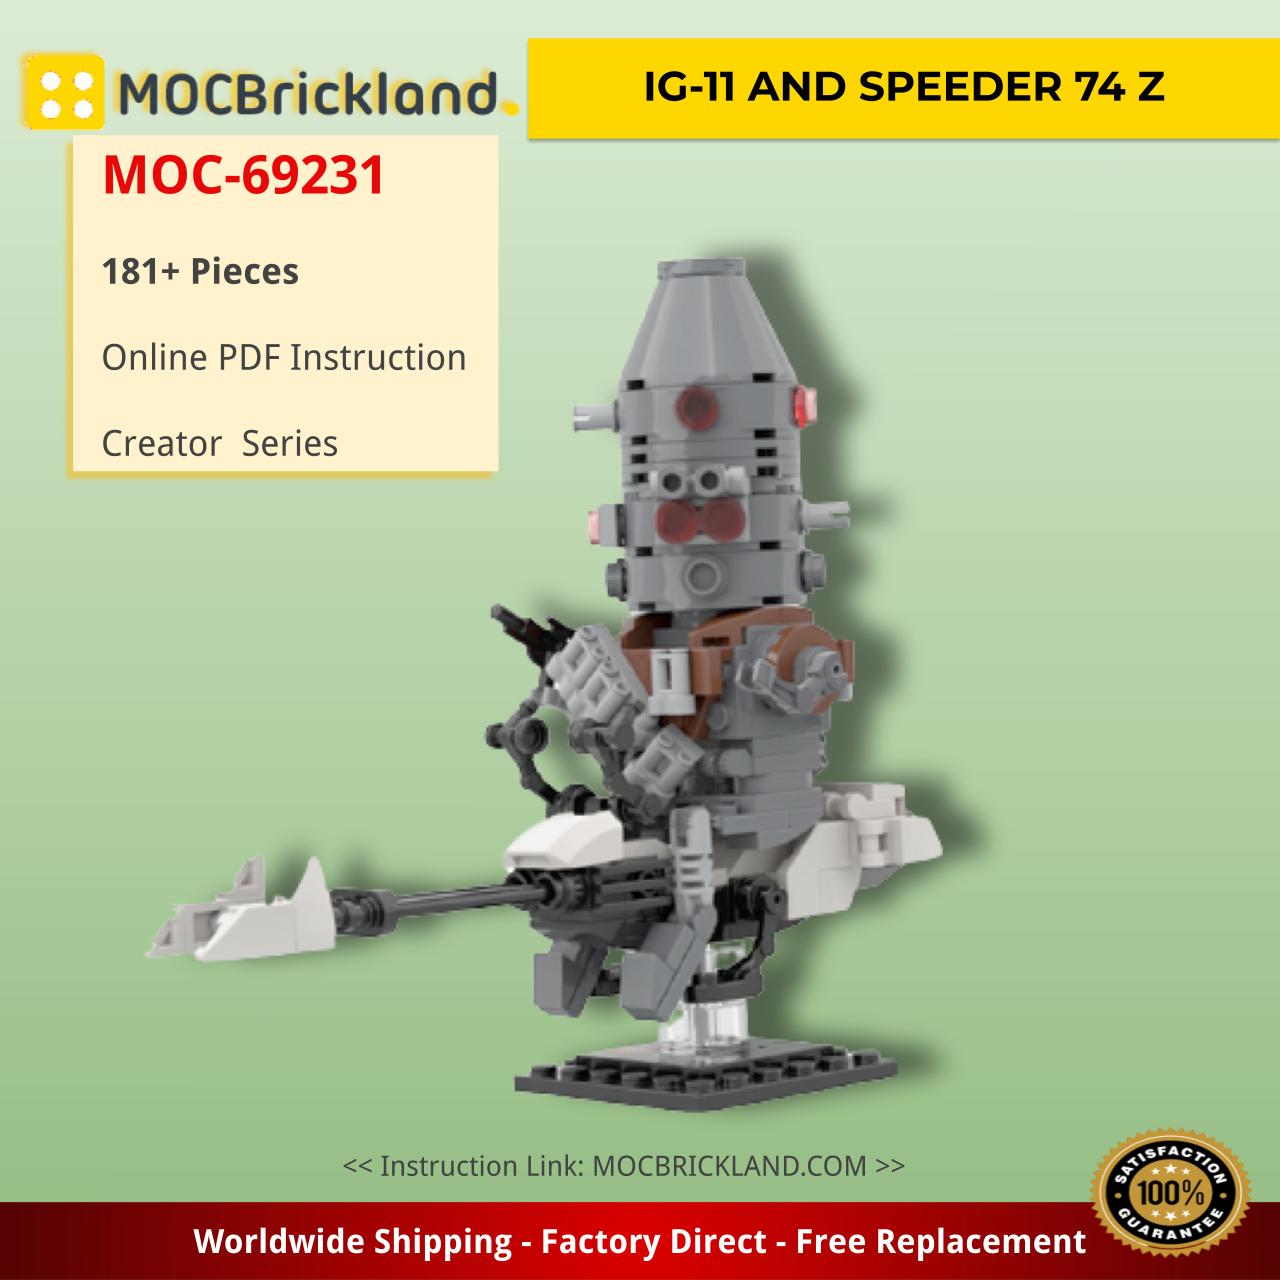 MOCBRICKLAND MOC-69231 IG-11 AND SPEEDER 74 Z